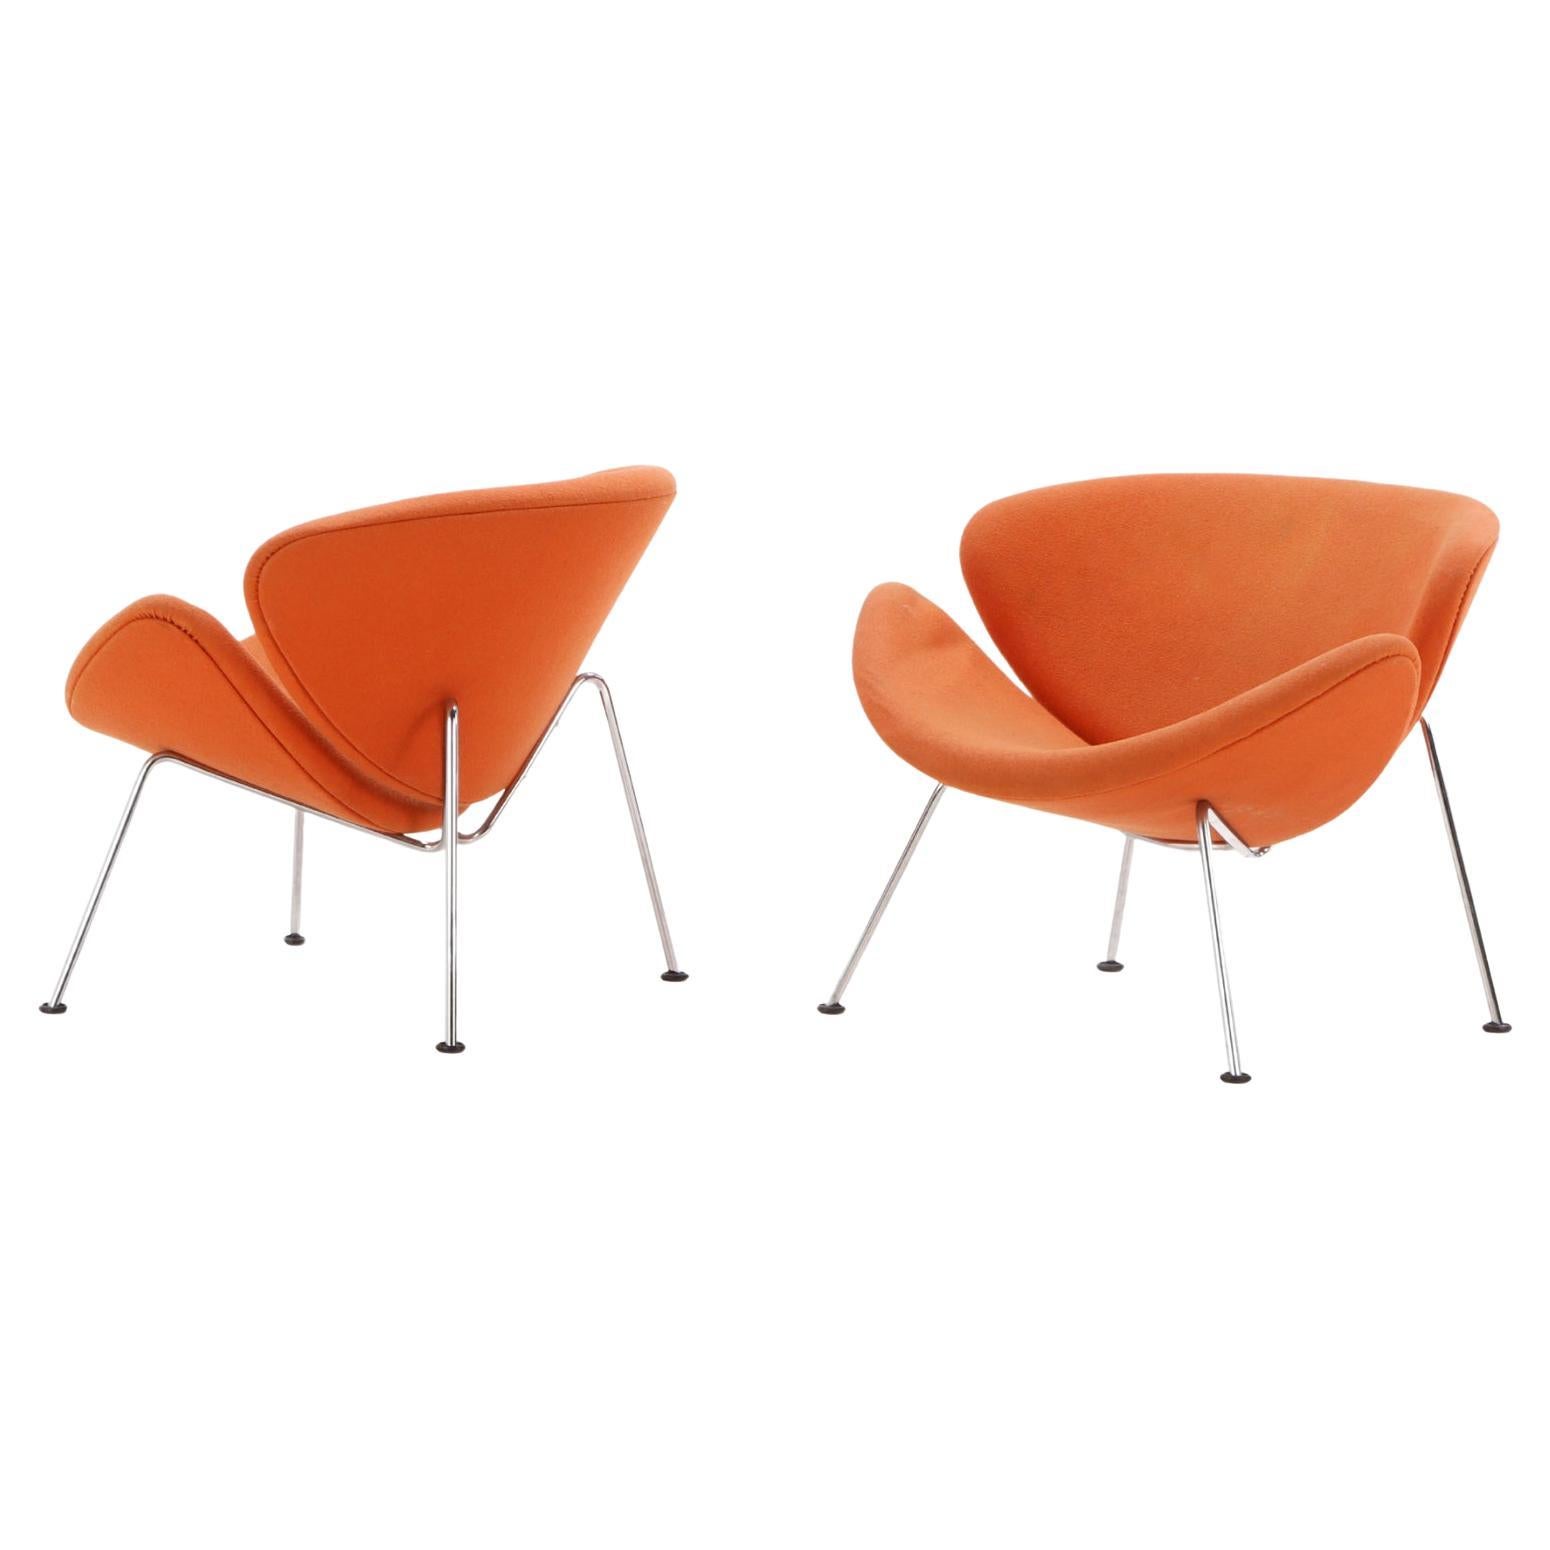 Ein Paar gepolsterte, orangefarbene, verchromte Stühle im Pierre Paulin-Stil